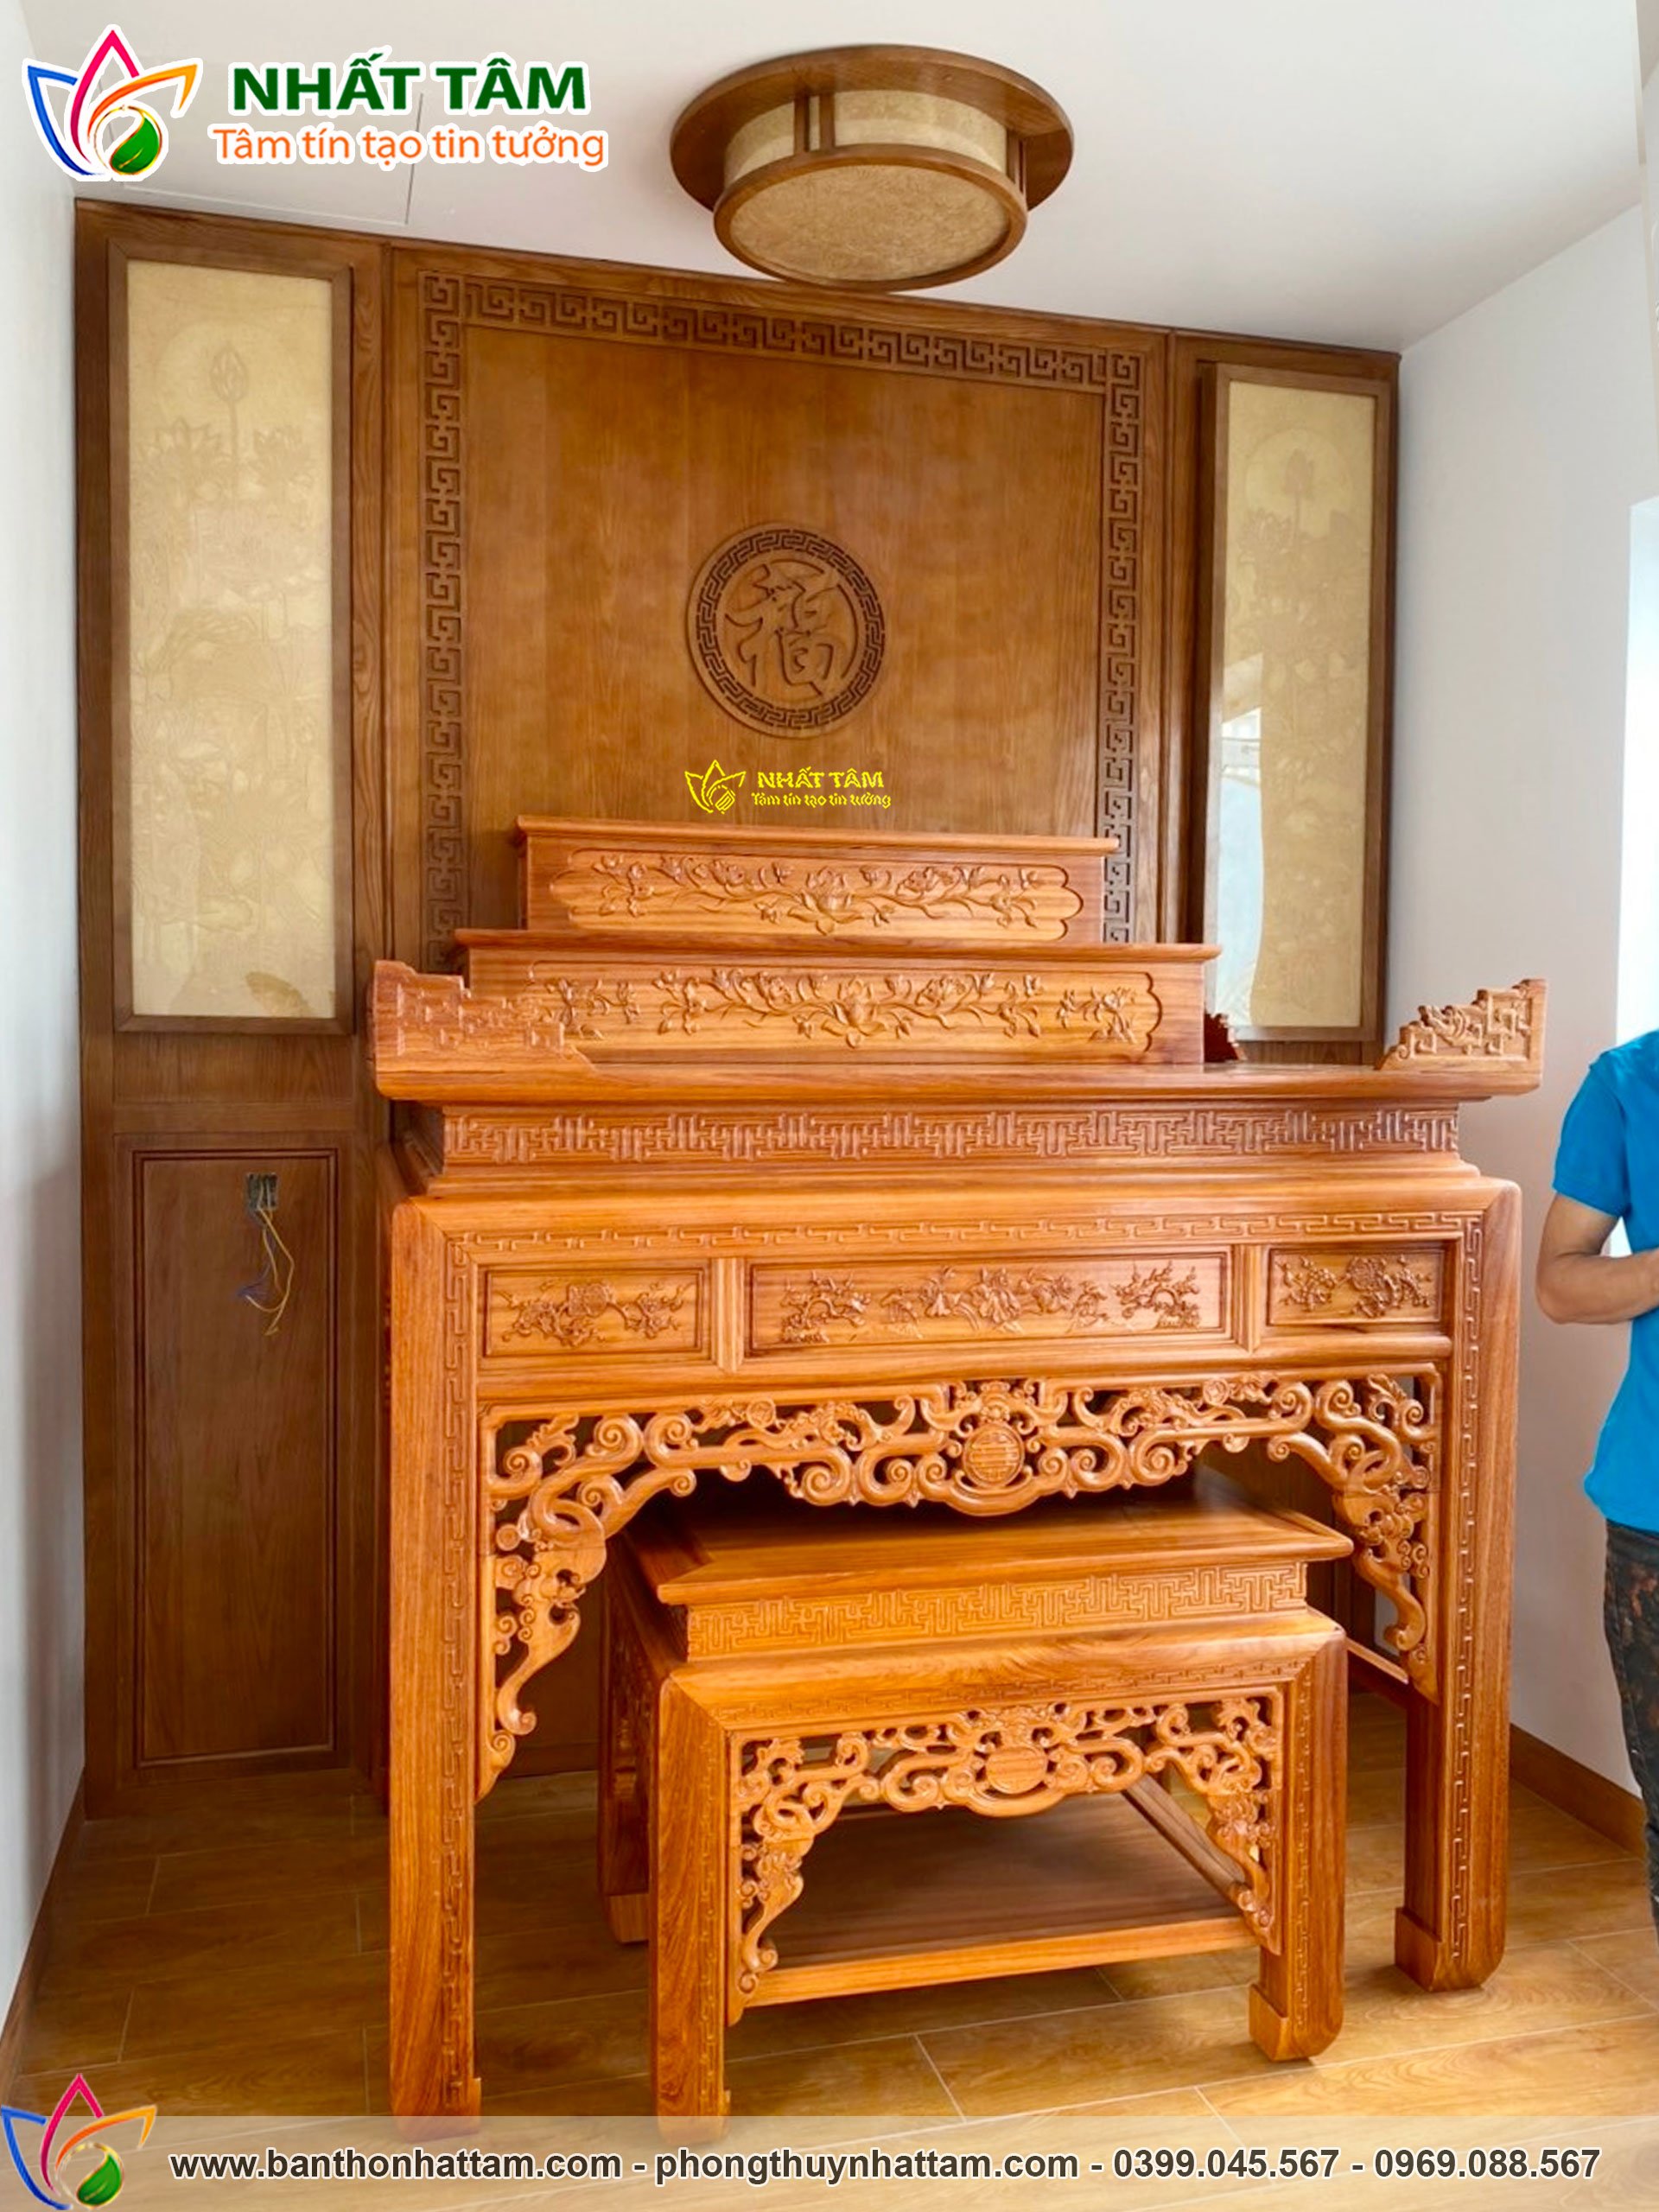 Hoàn thiện không gian thờ mới cho khách hàng anh Huy tại Đà Nẵng